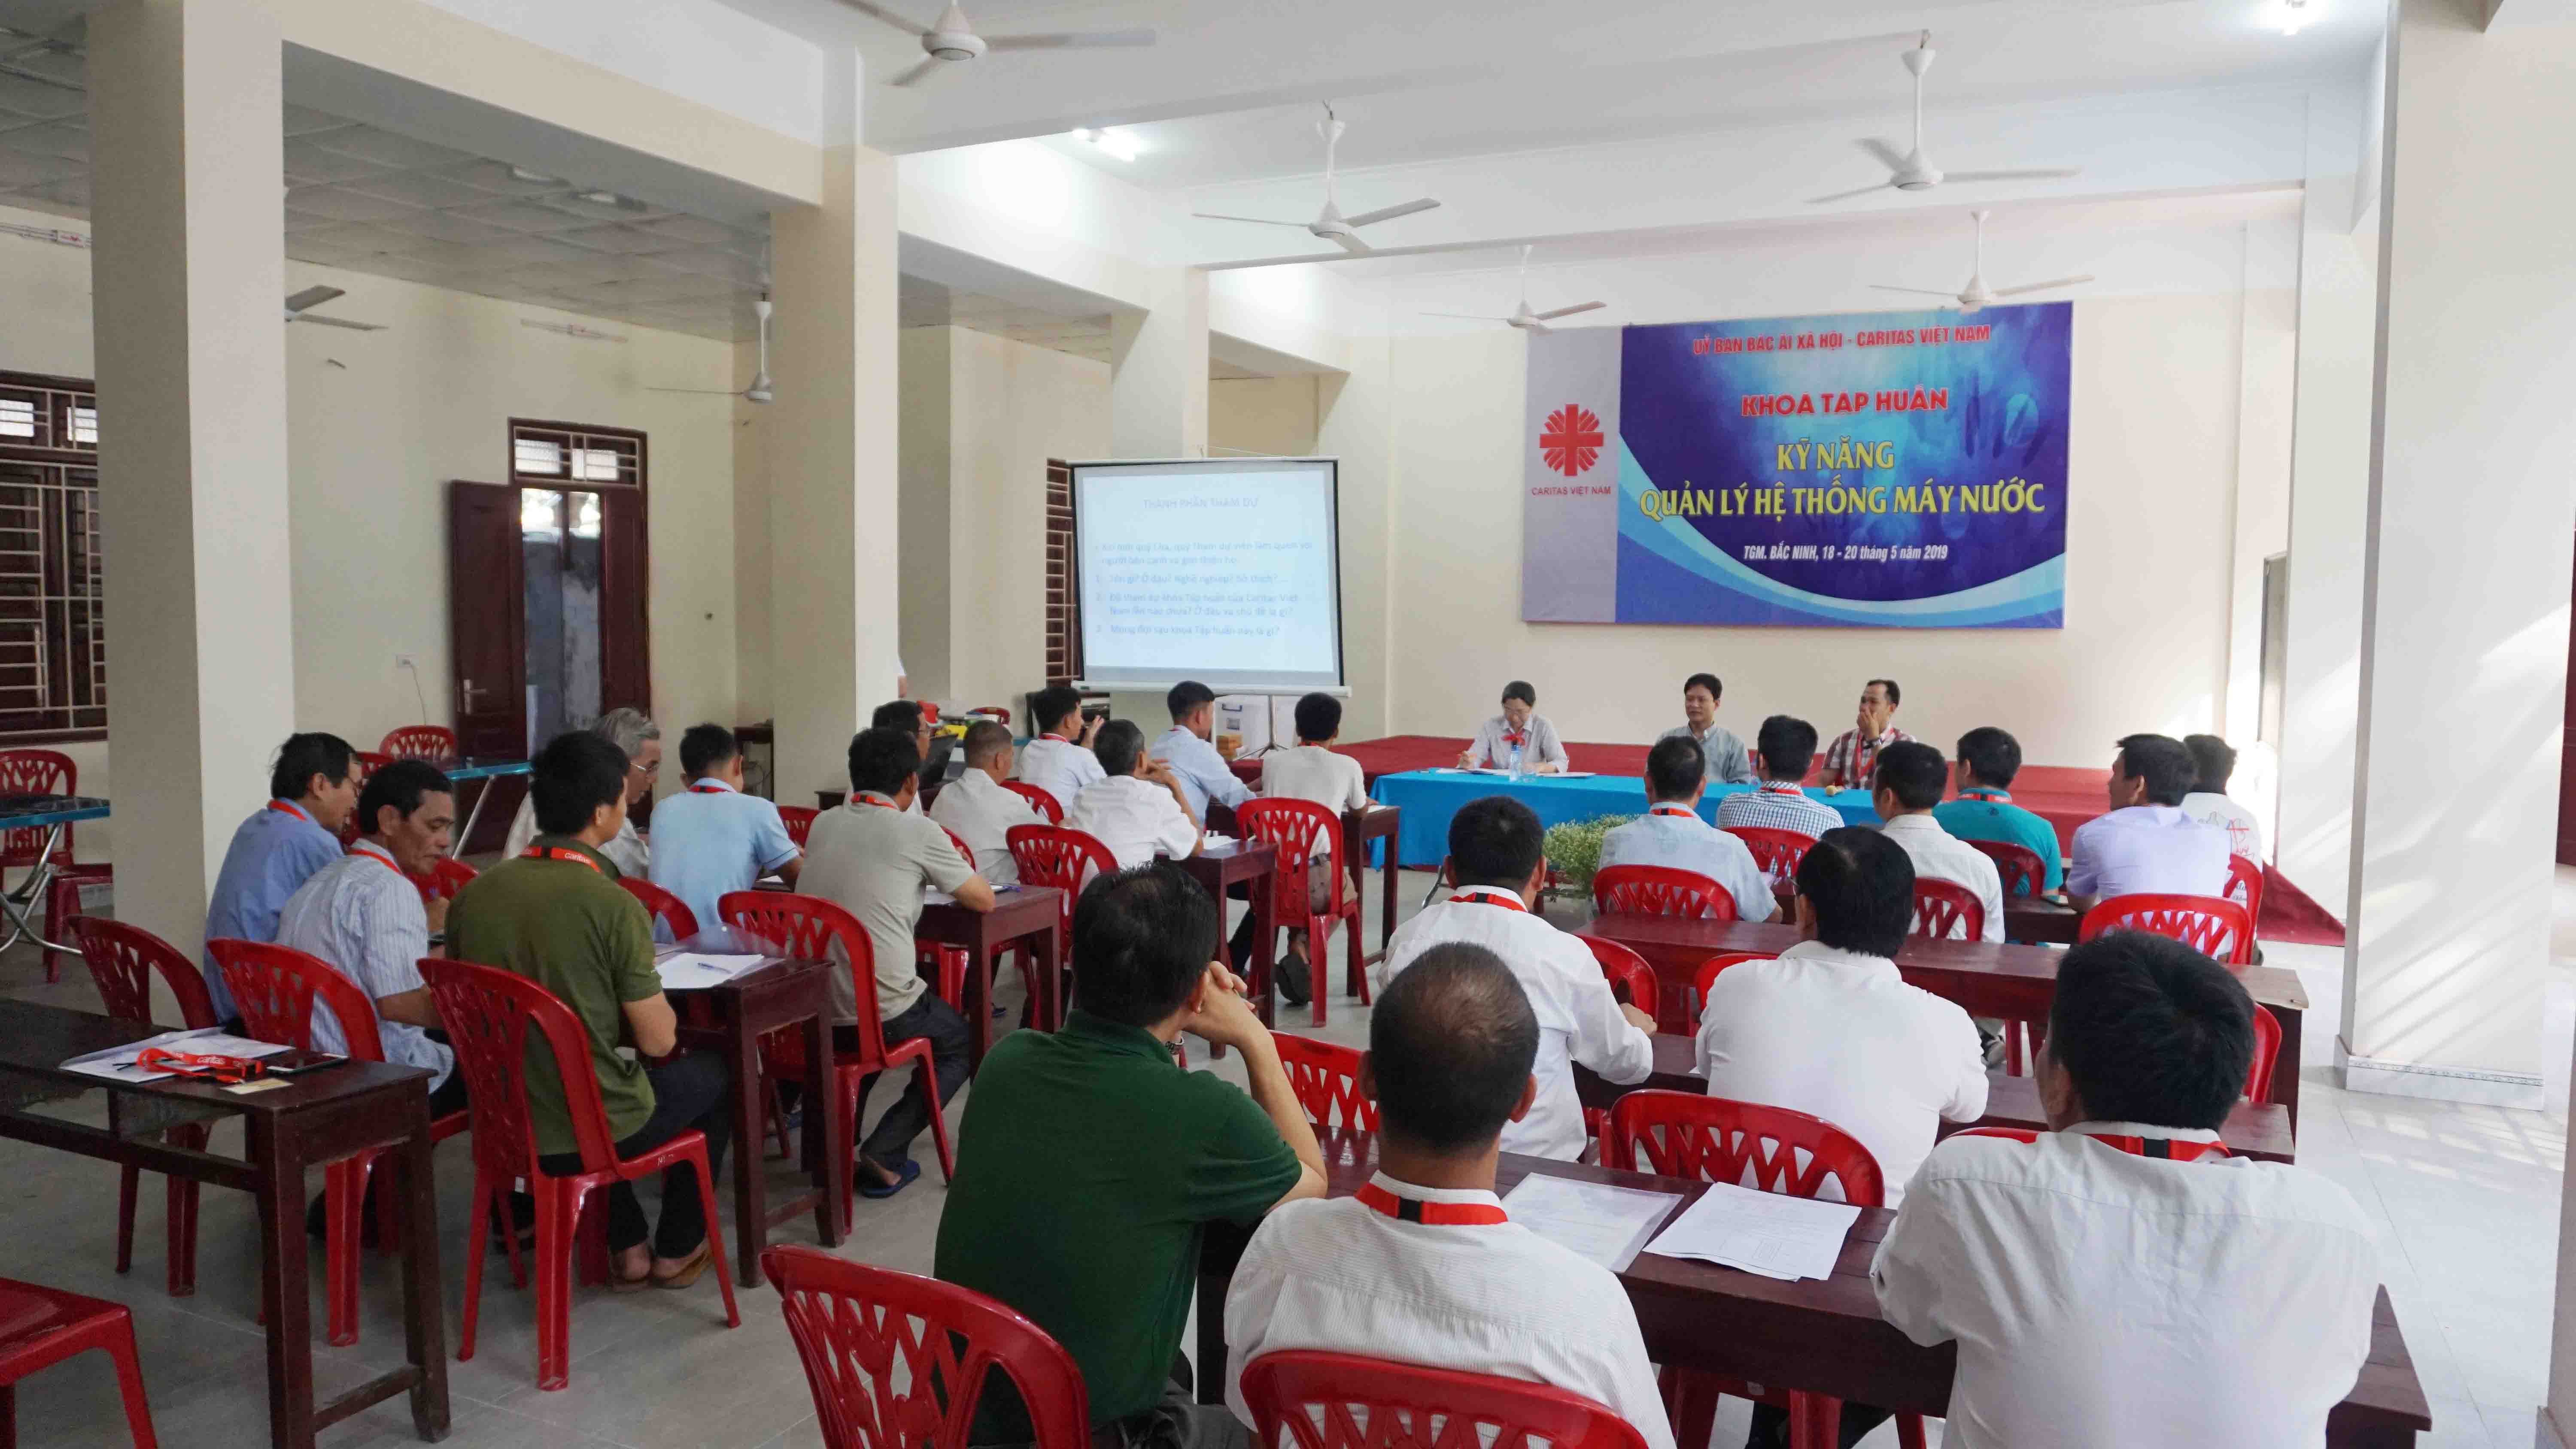 Caritas Việt Nam: Khoá tập huấn Kỹ năng quản lý hệ thống máy nước